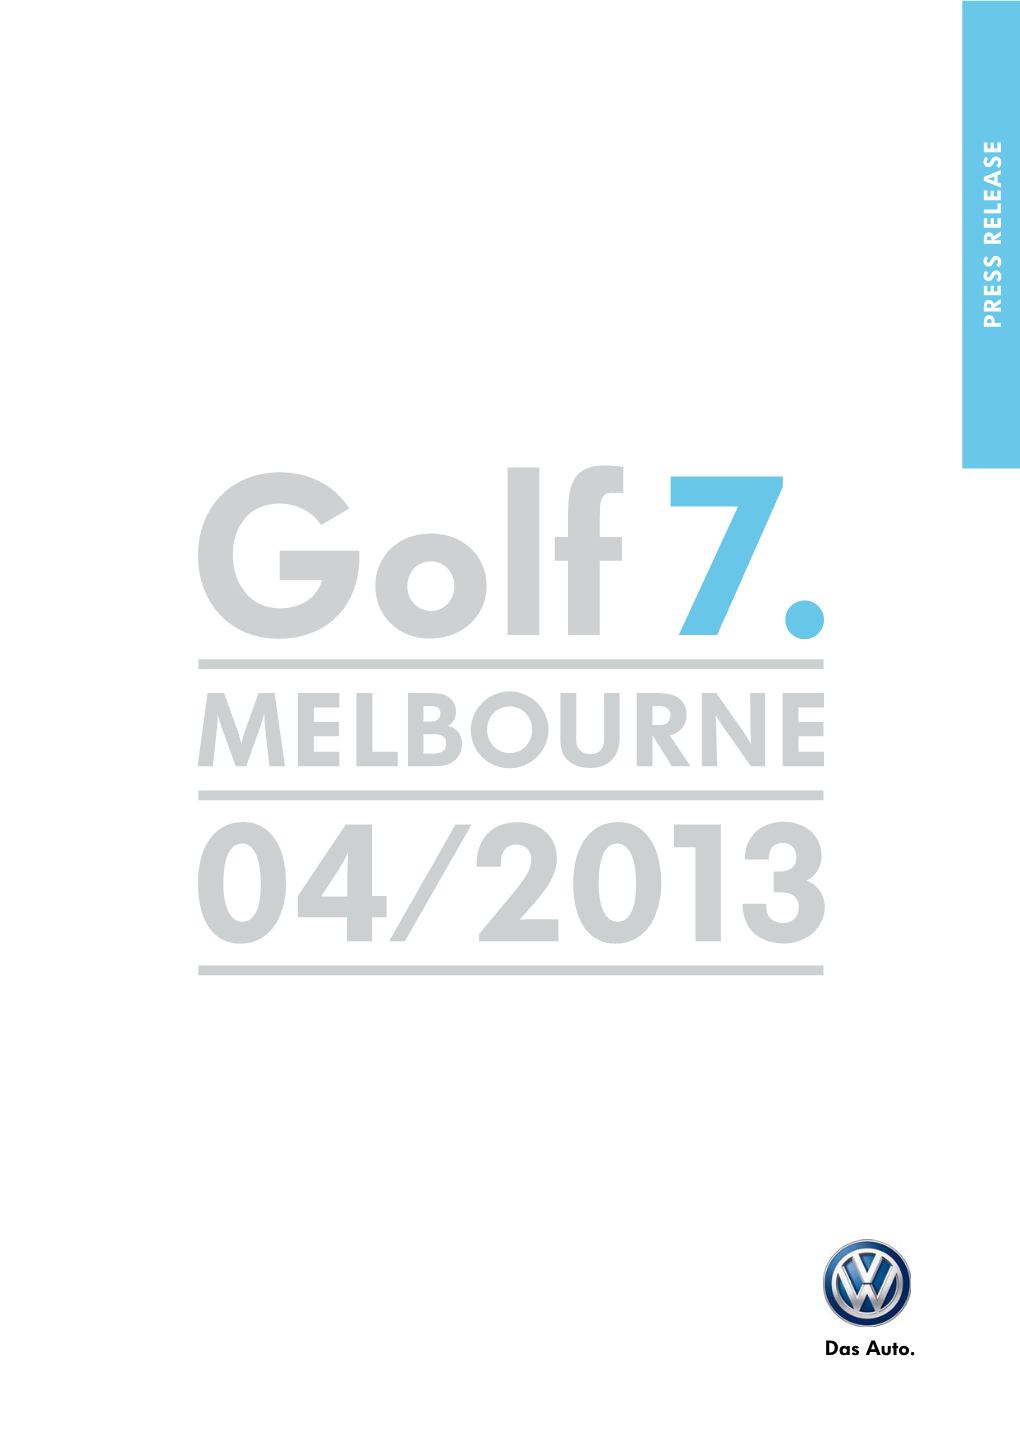 Press Kit: Volkswagen Mk.7 Golf (April 2013)